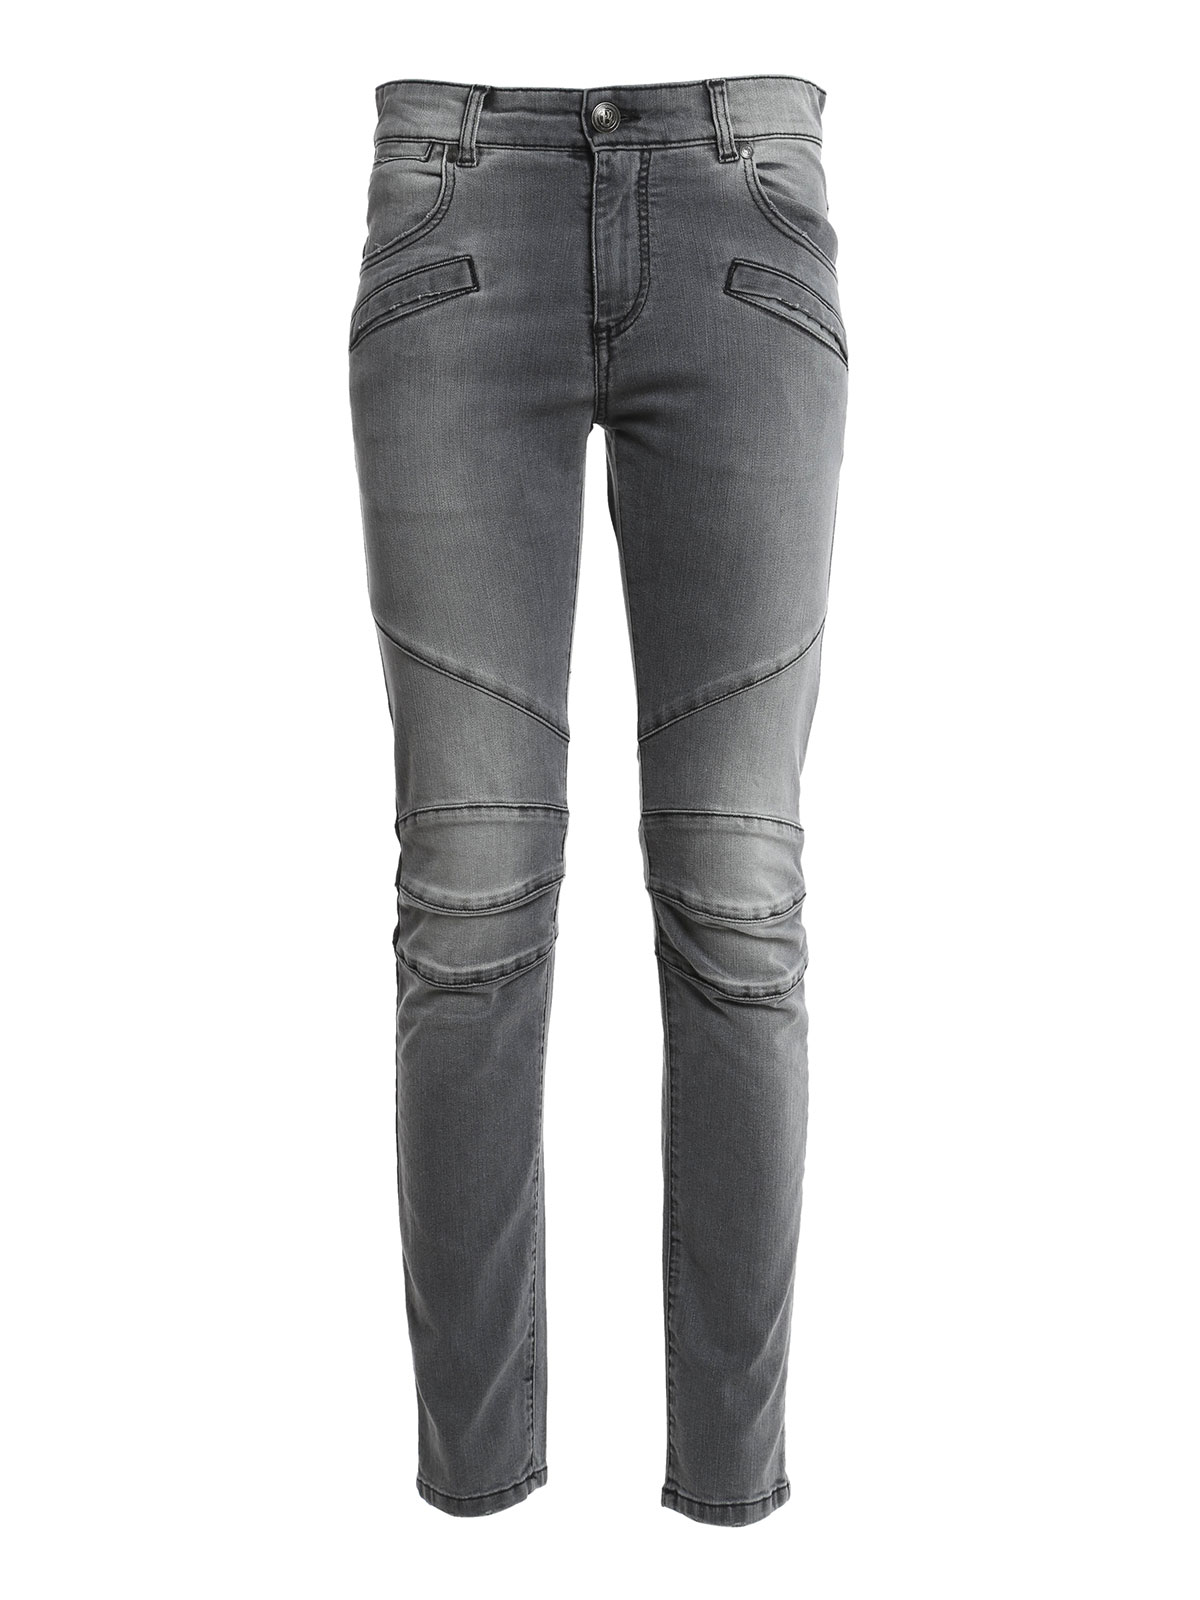 Skinny jeans Pierre Balmain Biker jeans -